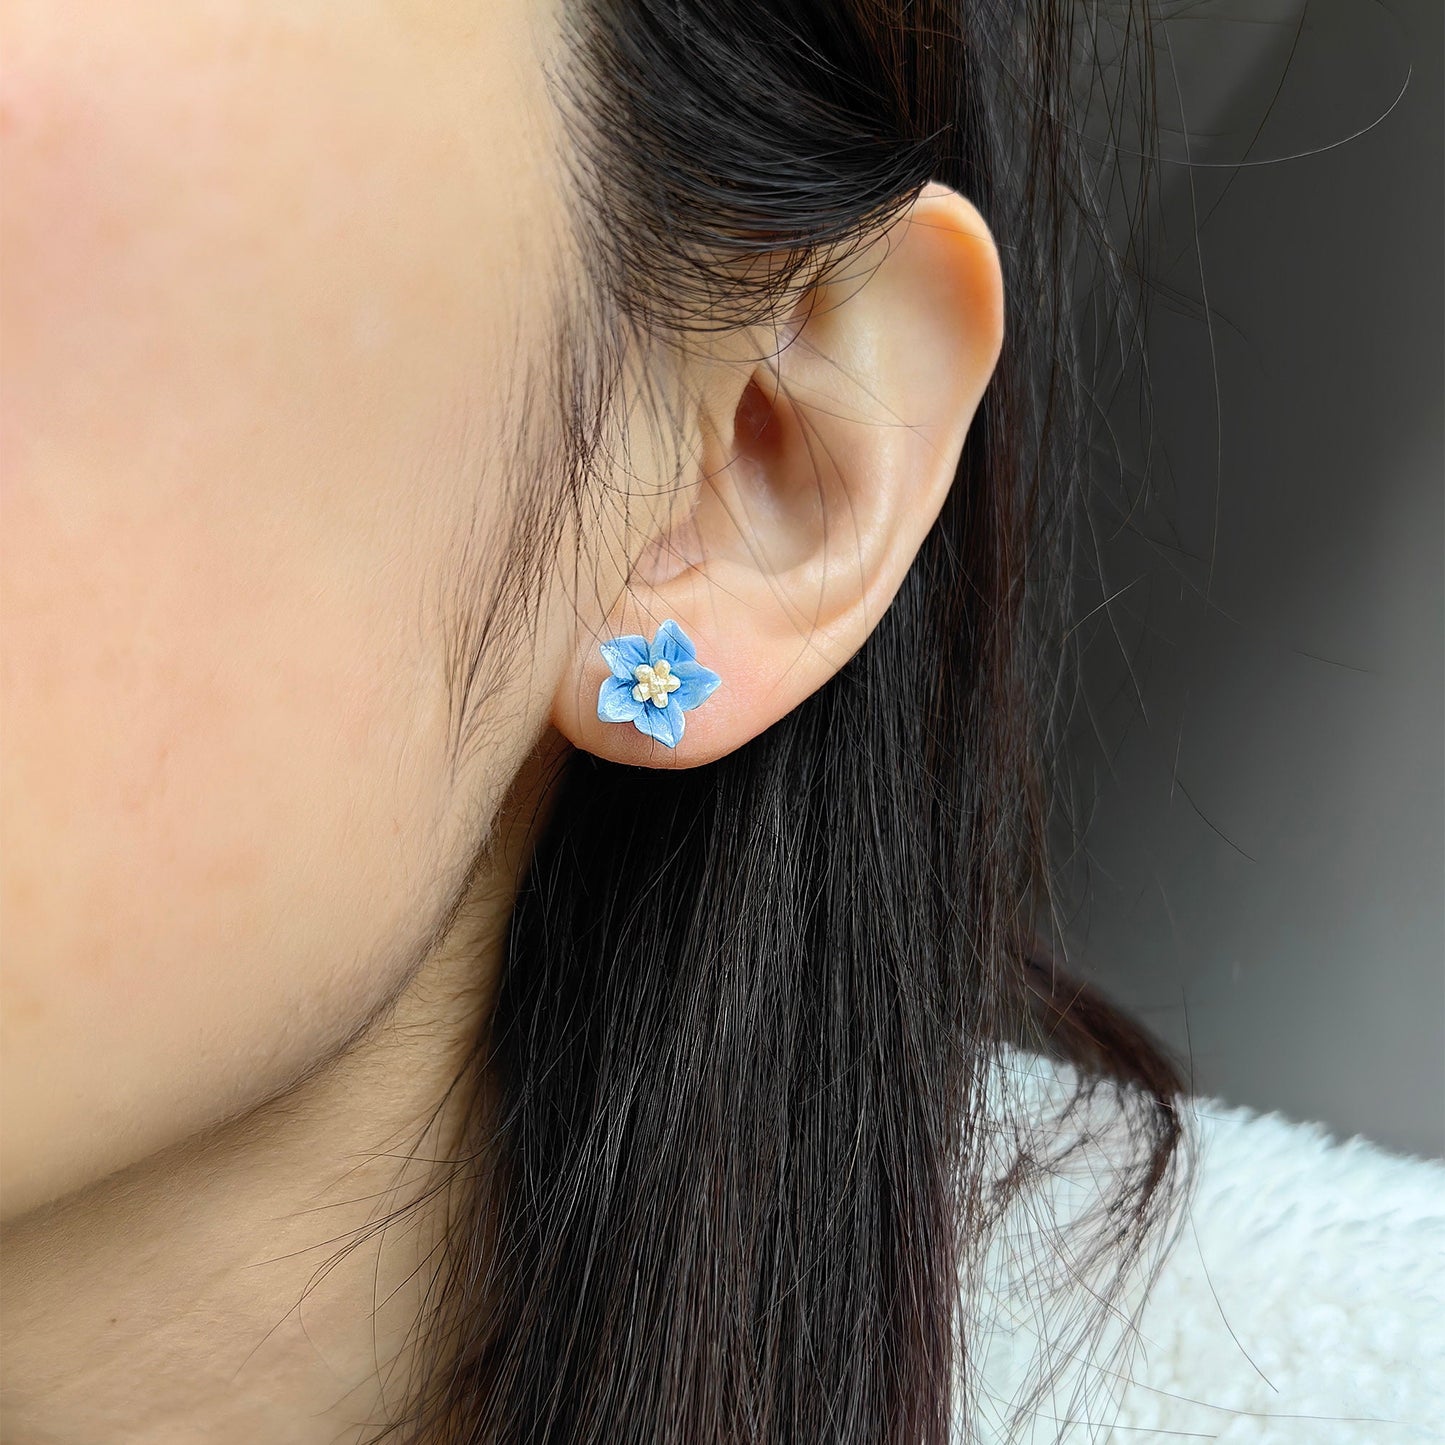 Acrylic Blue Balloon Flower Stud Earrings with Silver Posts Jewellery for Kids Girls Daily Wear 3D Flower Earrings